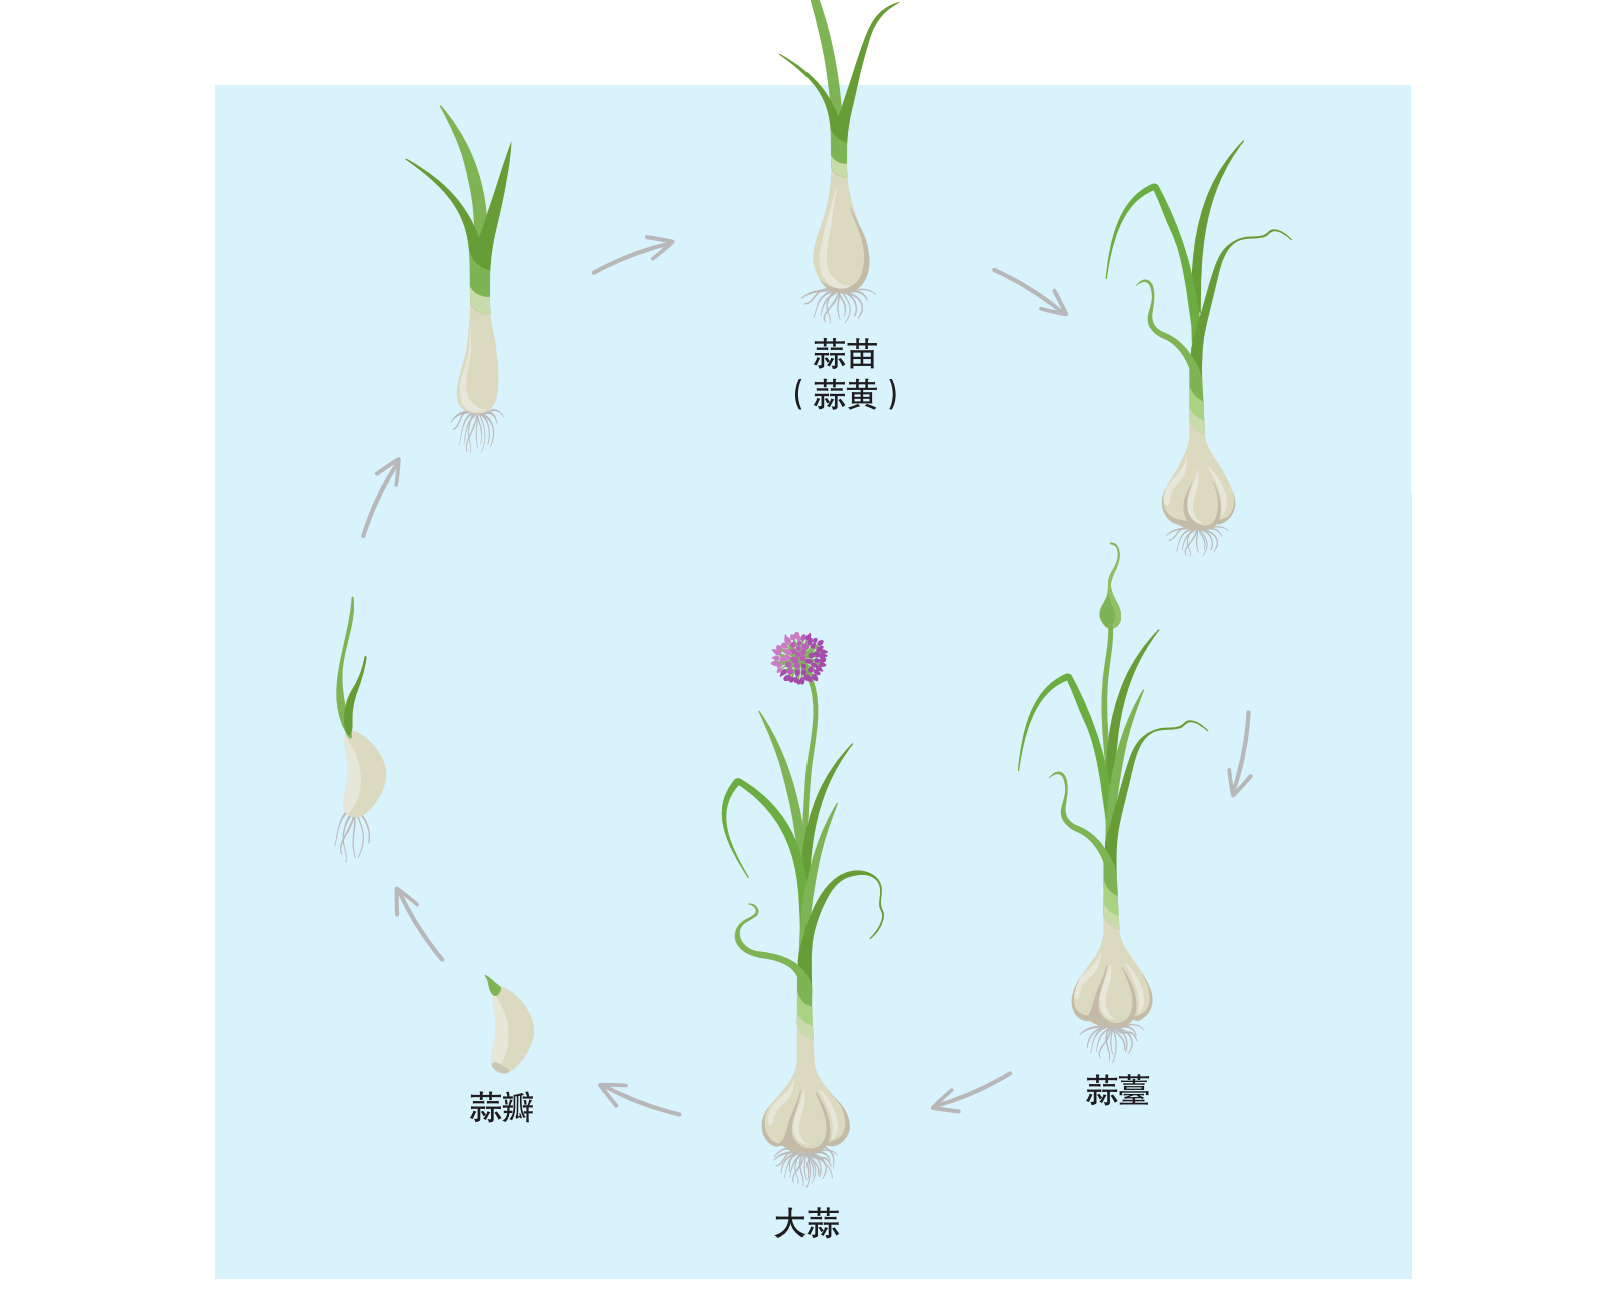 一头大蒜的生命周期(图片来源:视觉中国)